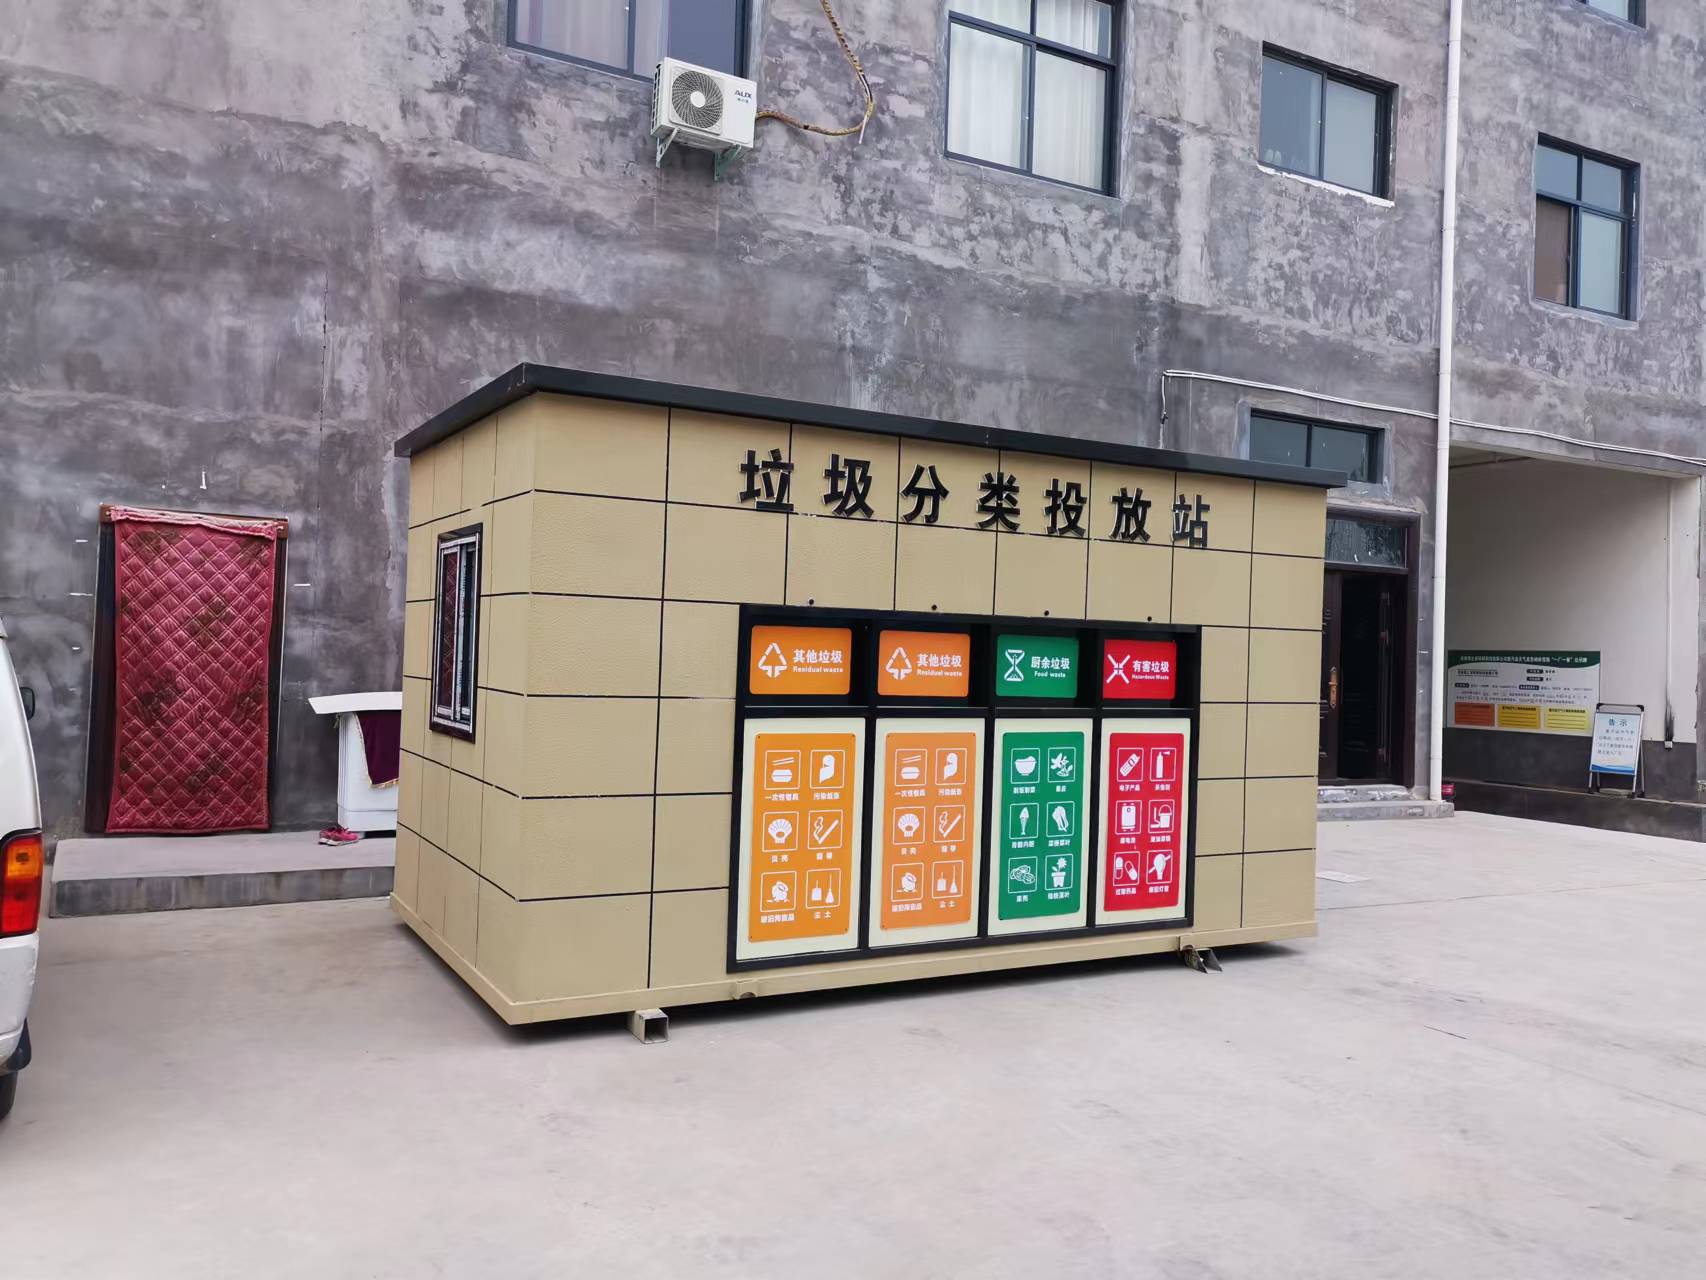 郑州垃圾分类房 垃圾房 垃圾屋 环保屋 垃圾分类回收房